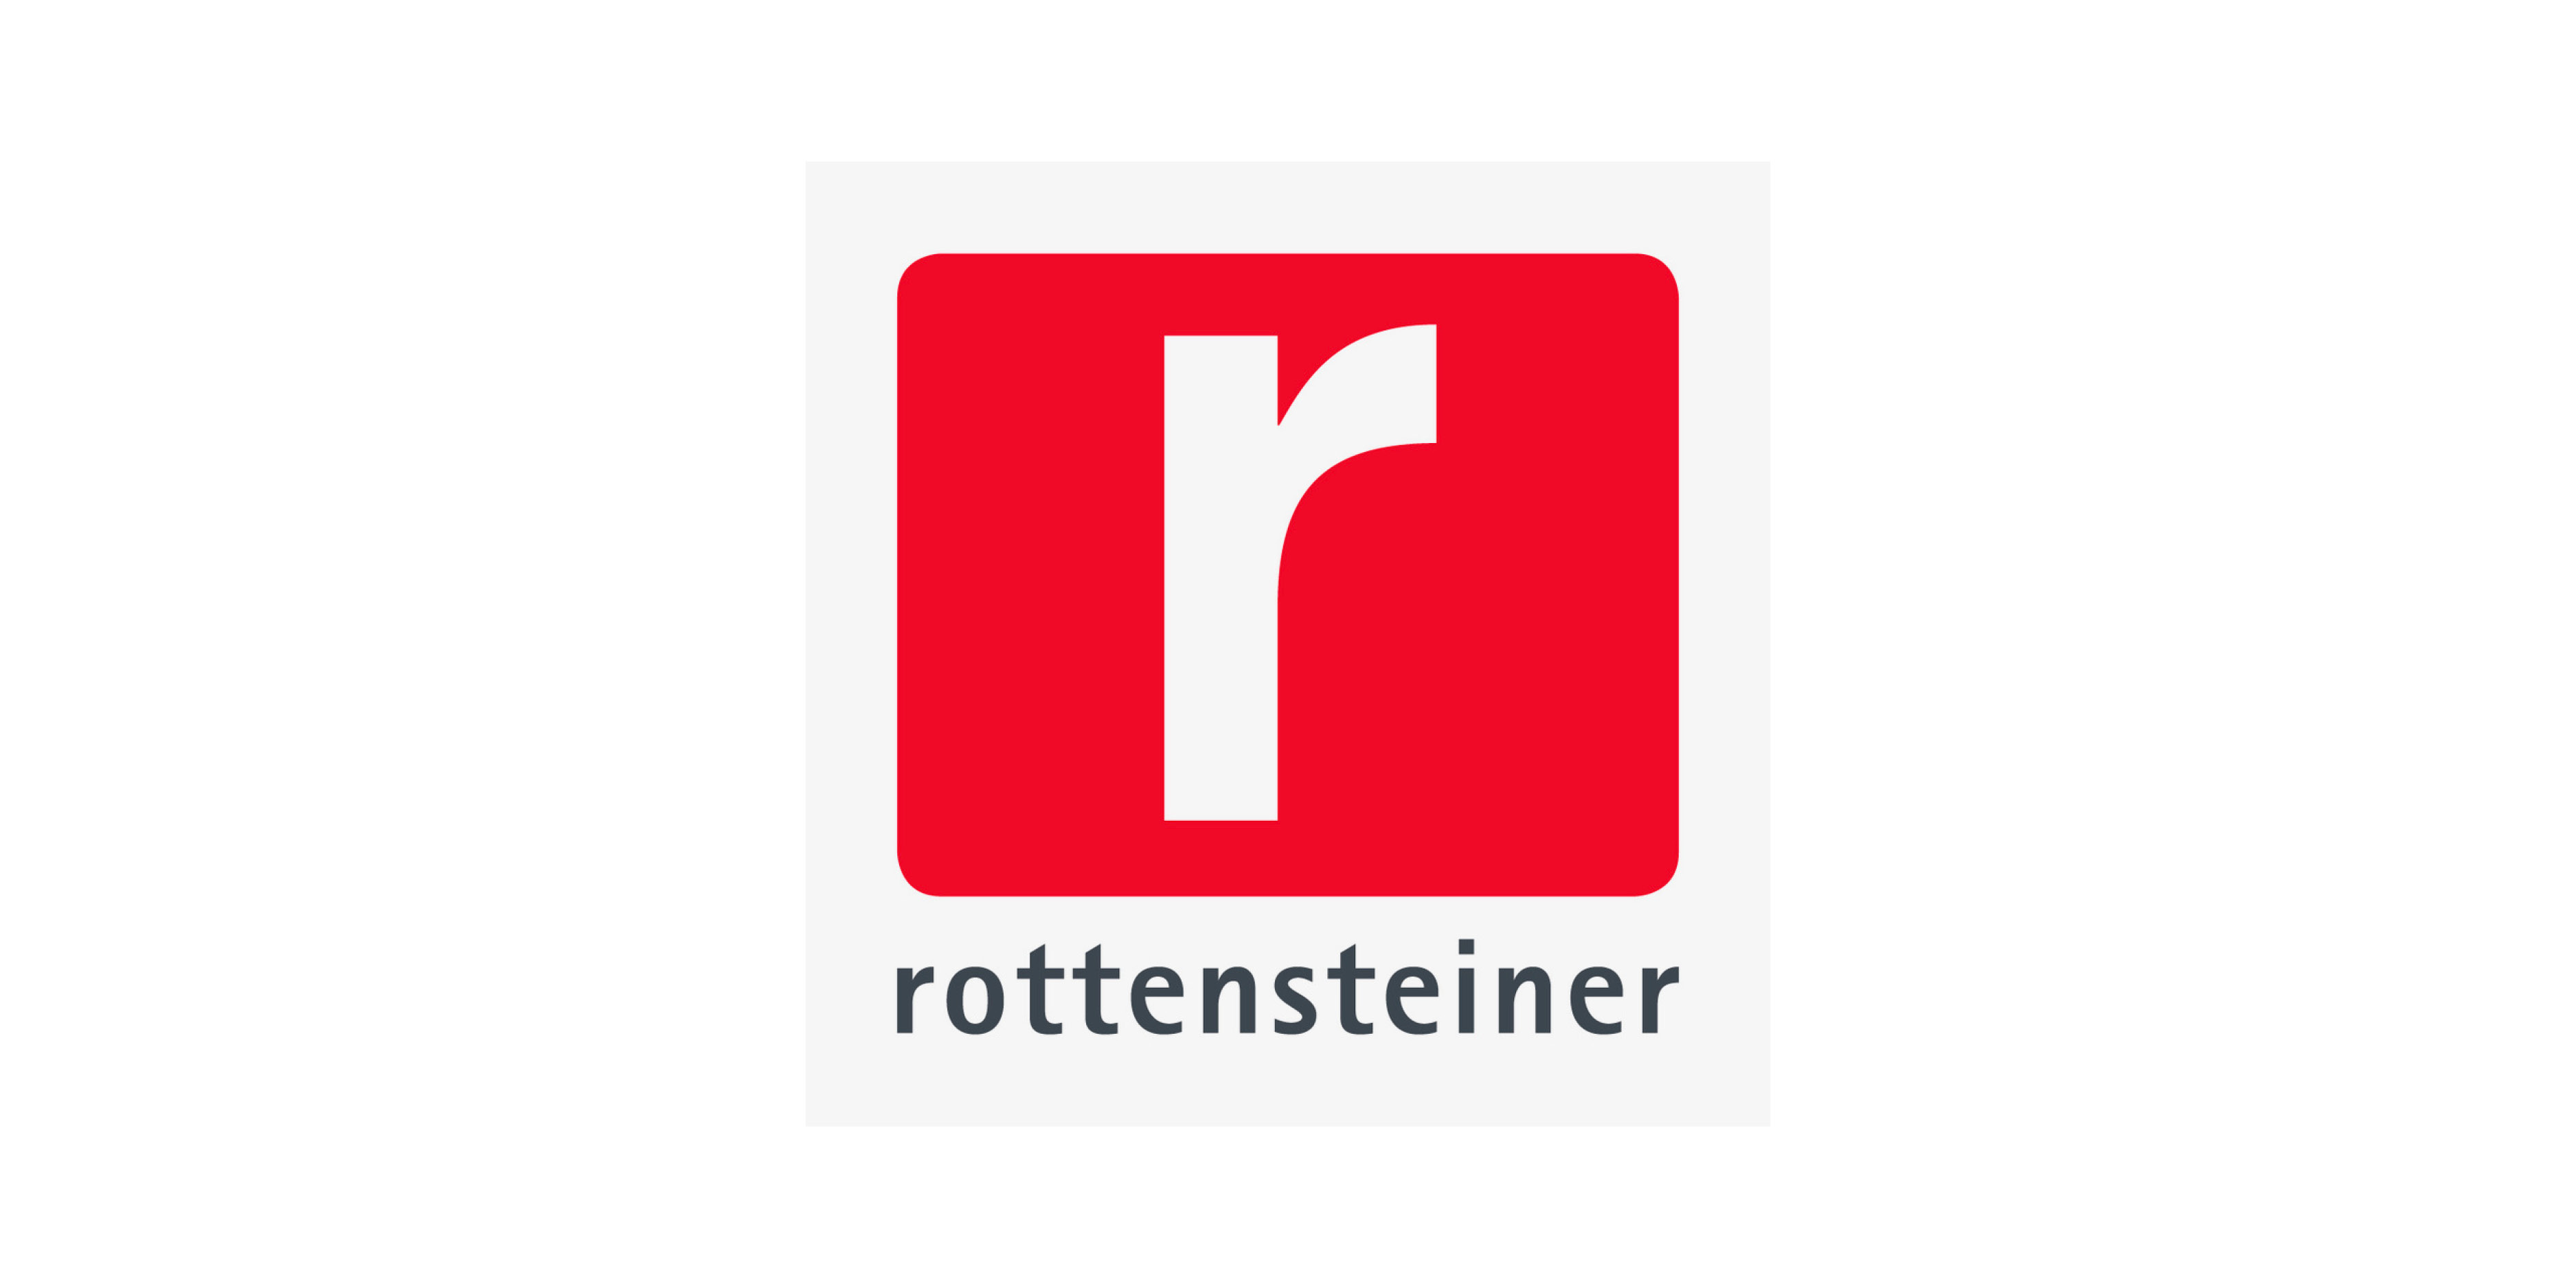 Rottensteiner GmbH | srl